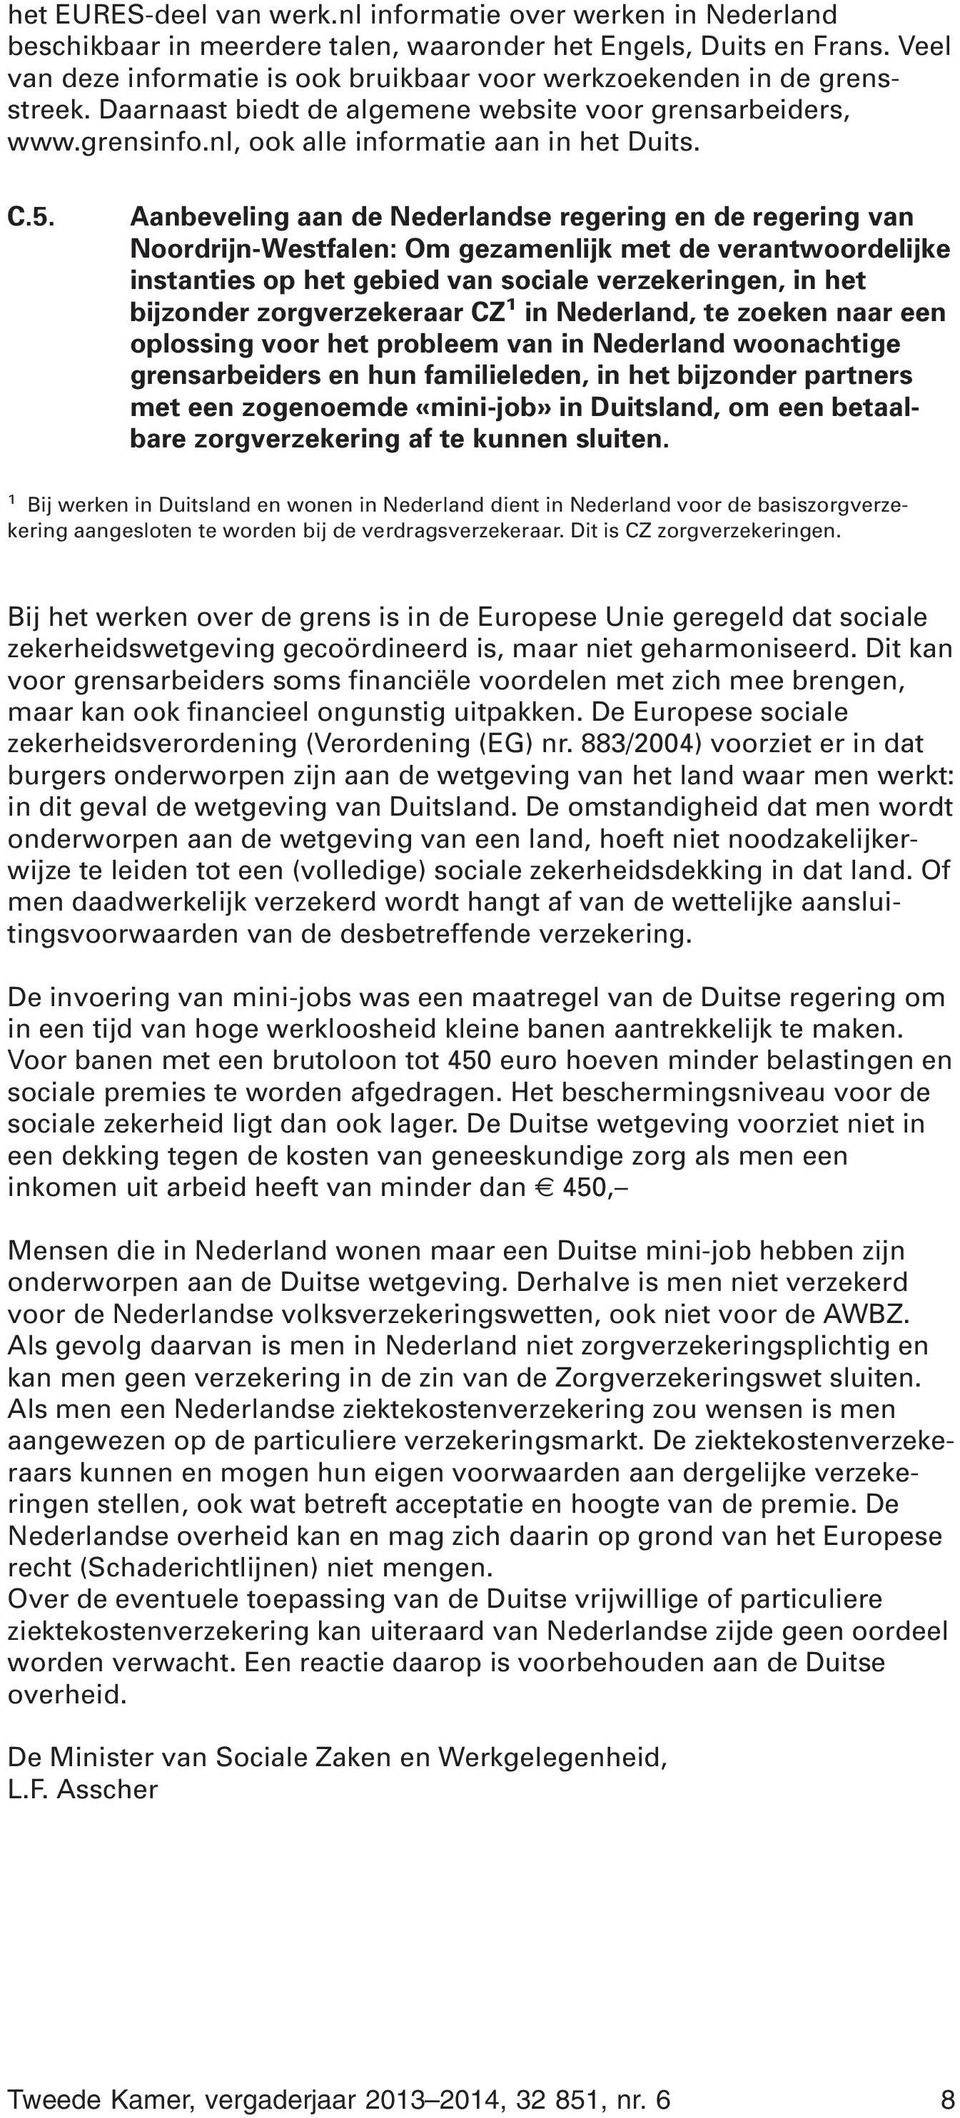 Aanbeveling aan de Nederlandse regering en de regering van Noordrijn-Westfalen: Om gezamenlijk met de verantwoordelijke instanties op het gebied van sociale verzekeringen, in het bijzonder